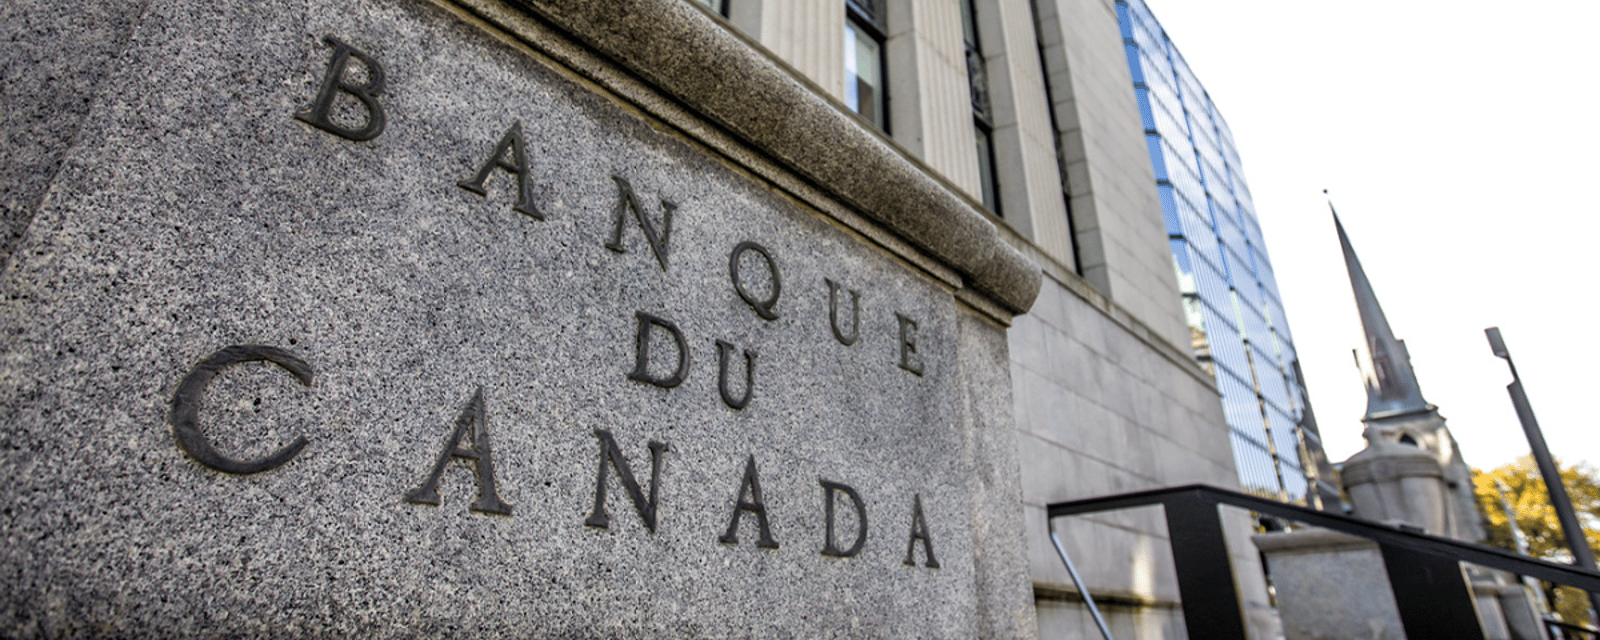 La Banque du Canada vient d'annoncer sa décision concernant le taux directeur